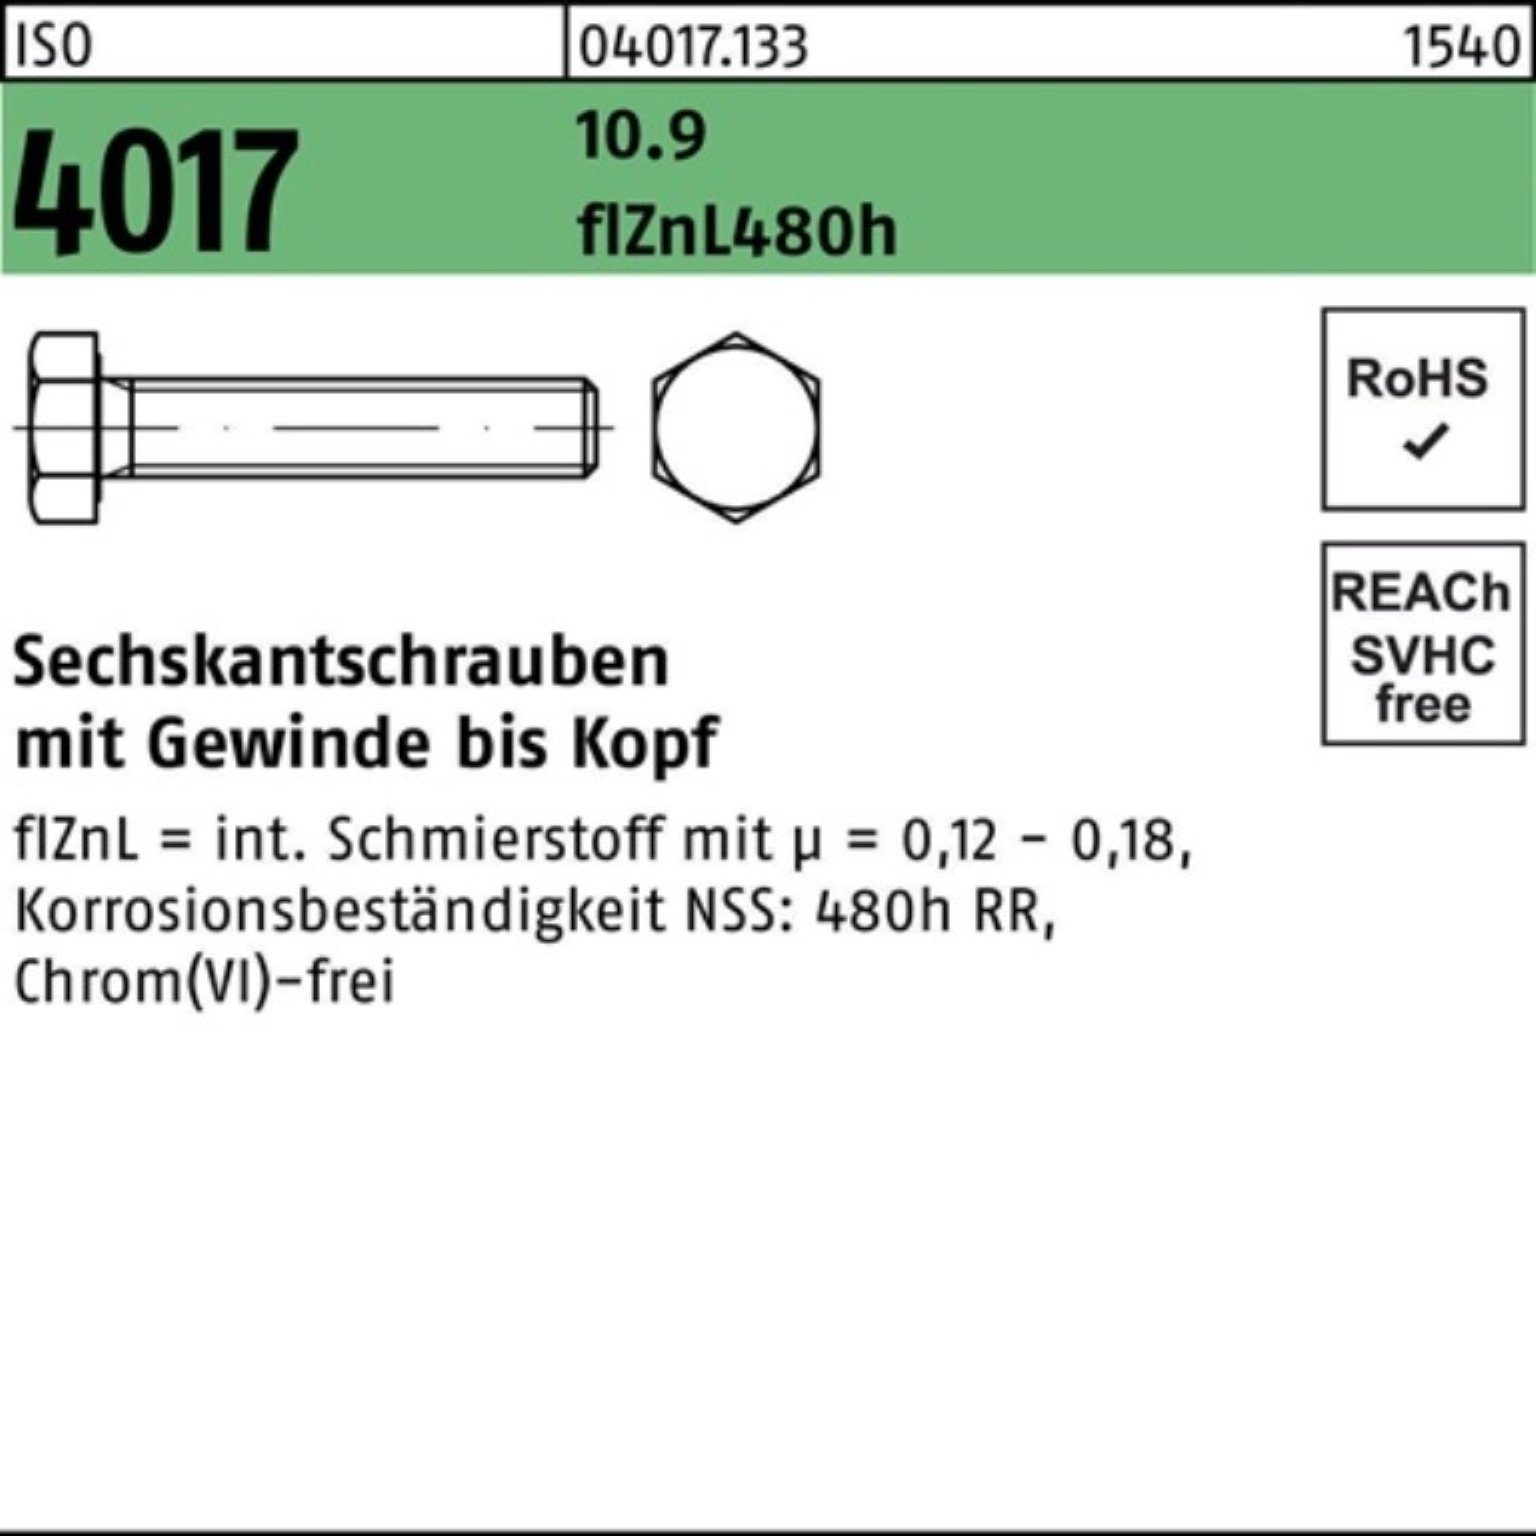 Bufab Sechskantschraube 100er zinklamellenb. 100 M16x 10.9 ISO Pack 4017 Sechskantschraube VG